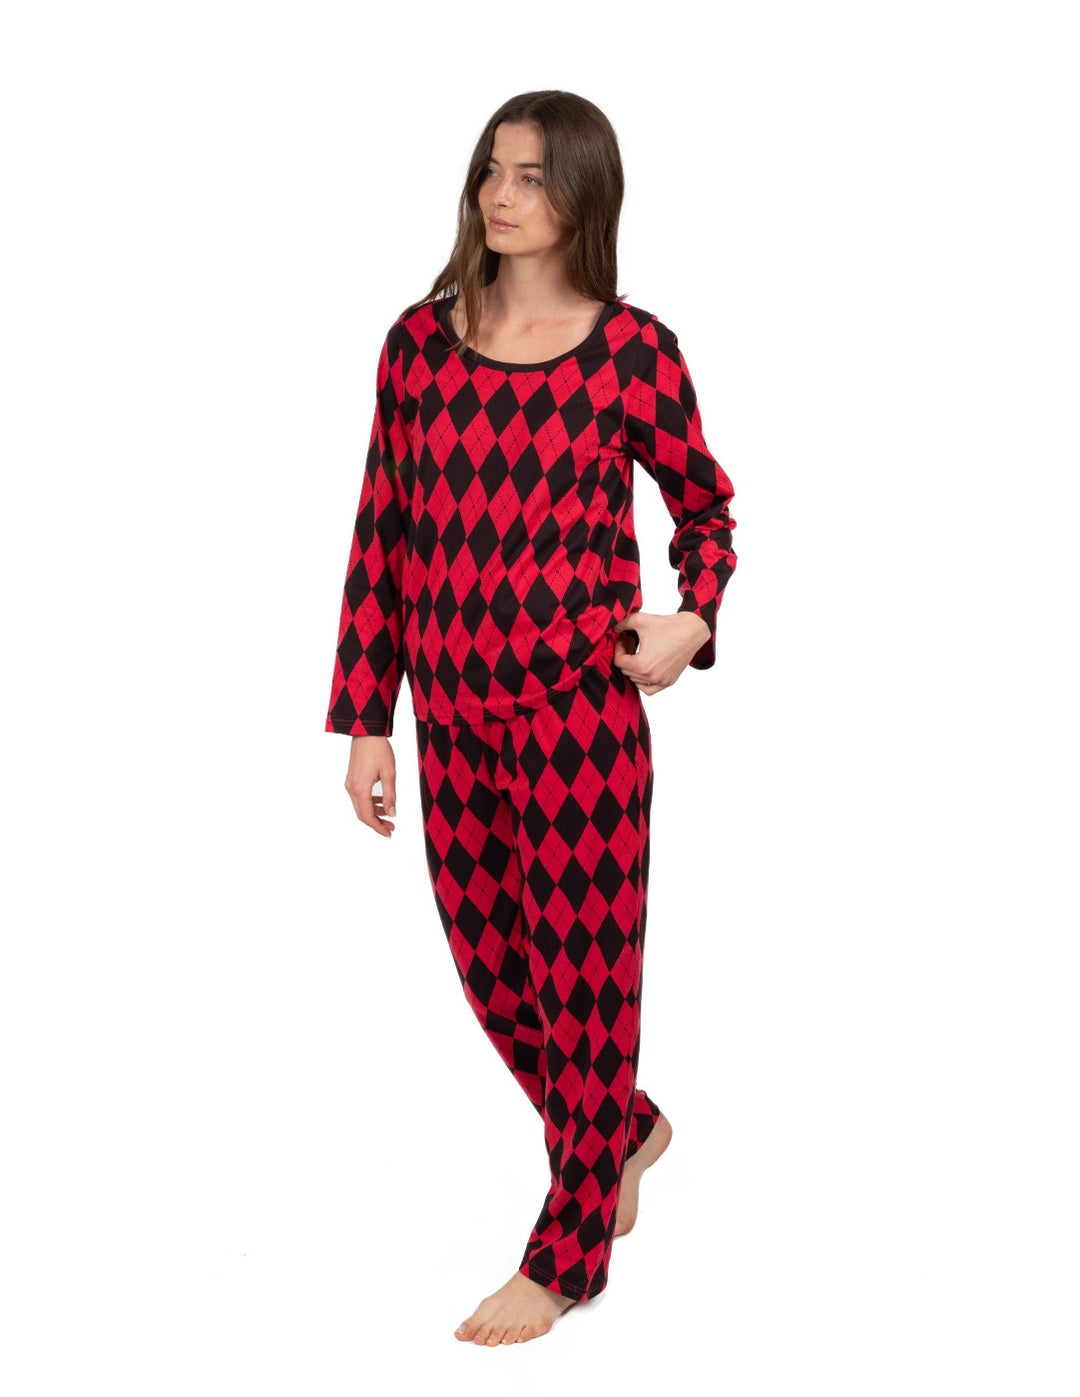 red and black argyle women's cotton pajamas